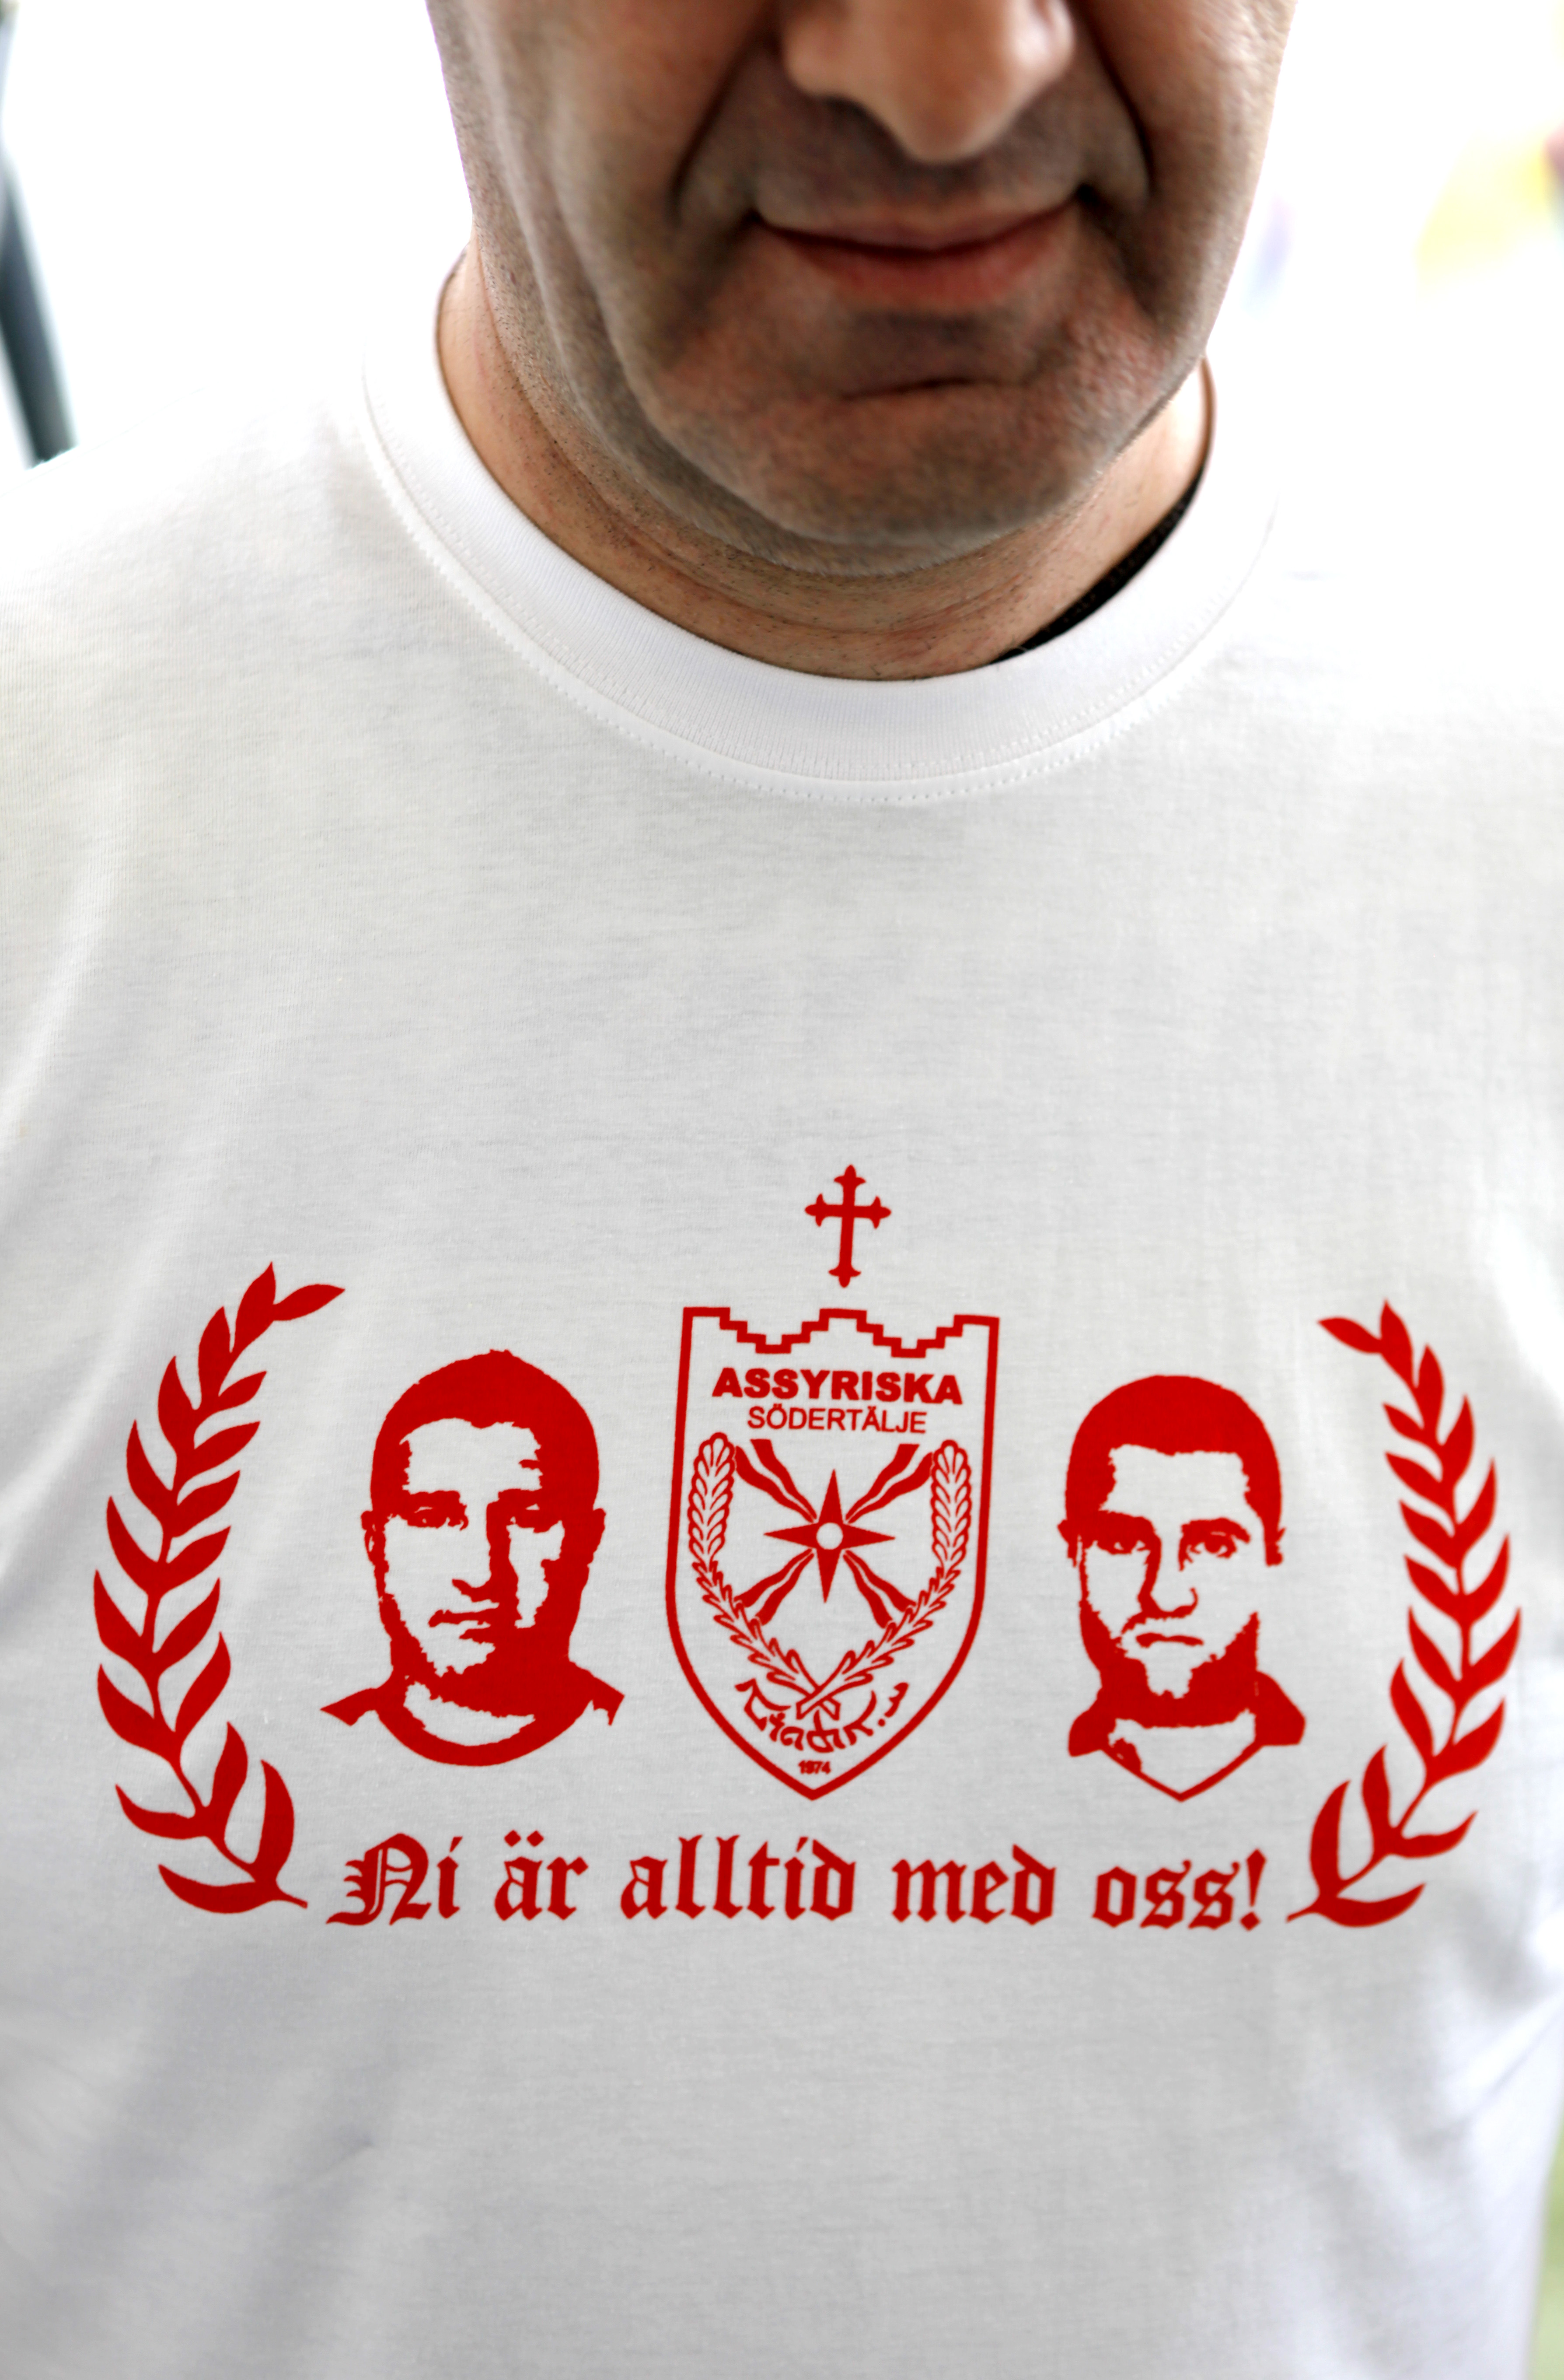 Bröderna Moussa hyllas på en t-shirt: "Ni är alltid med oss".